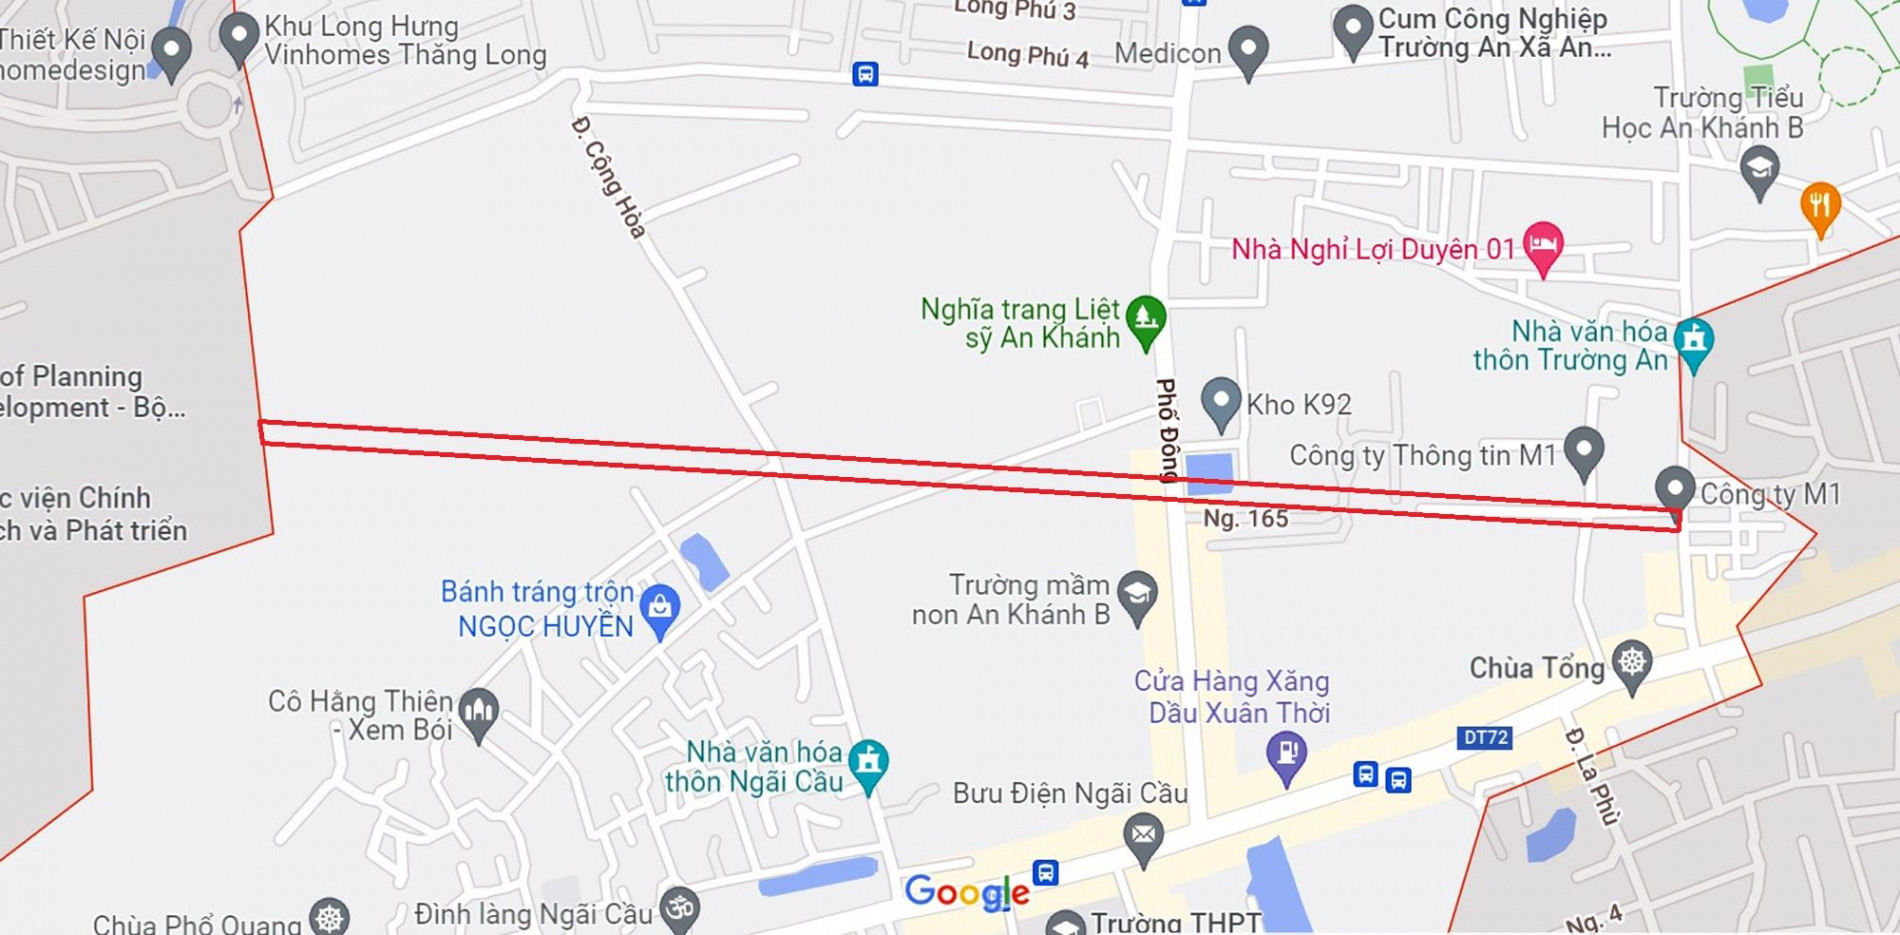 Đường sẽ mở theo quy hoạch ở xã An Khánh, Hoài Đức, Hà Nội (phần 5)